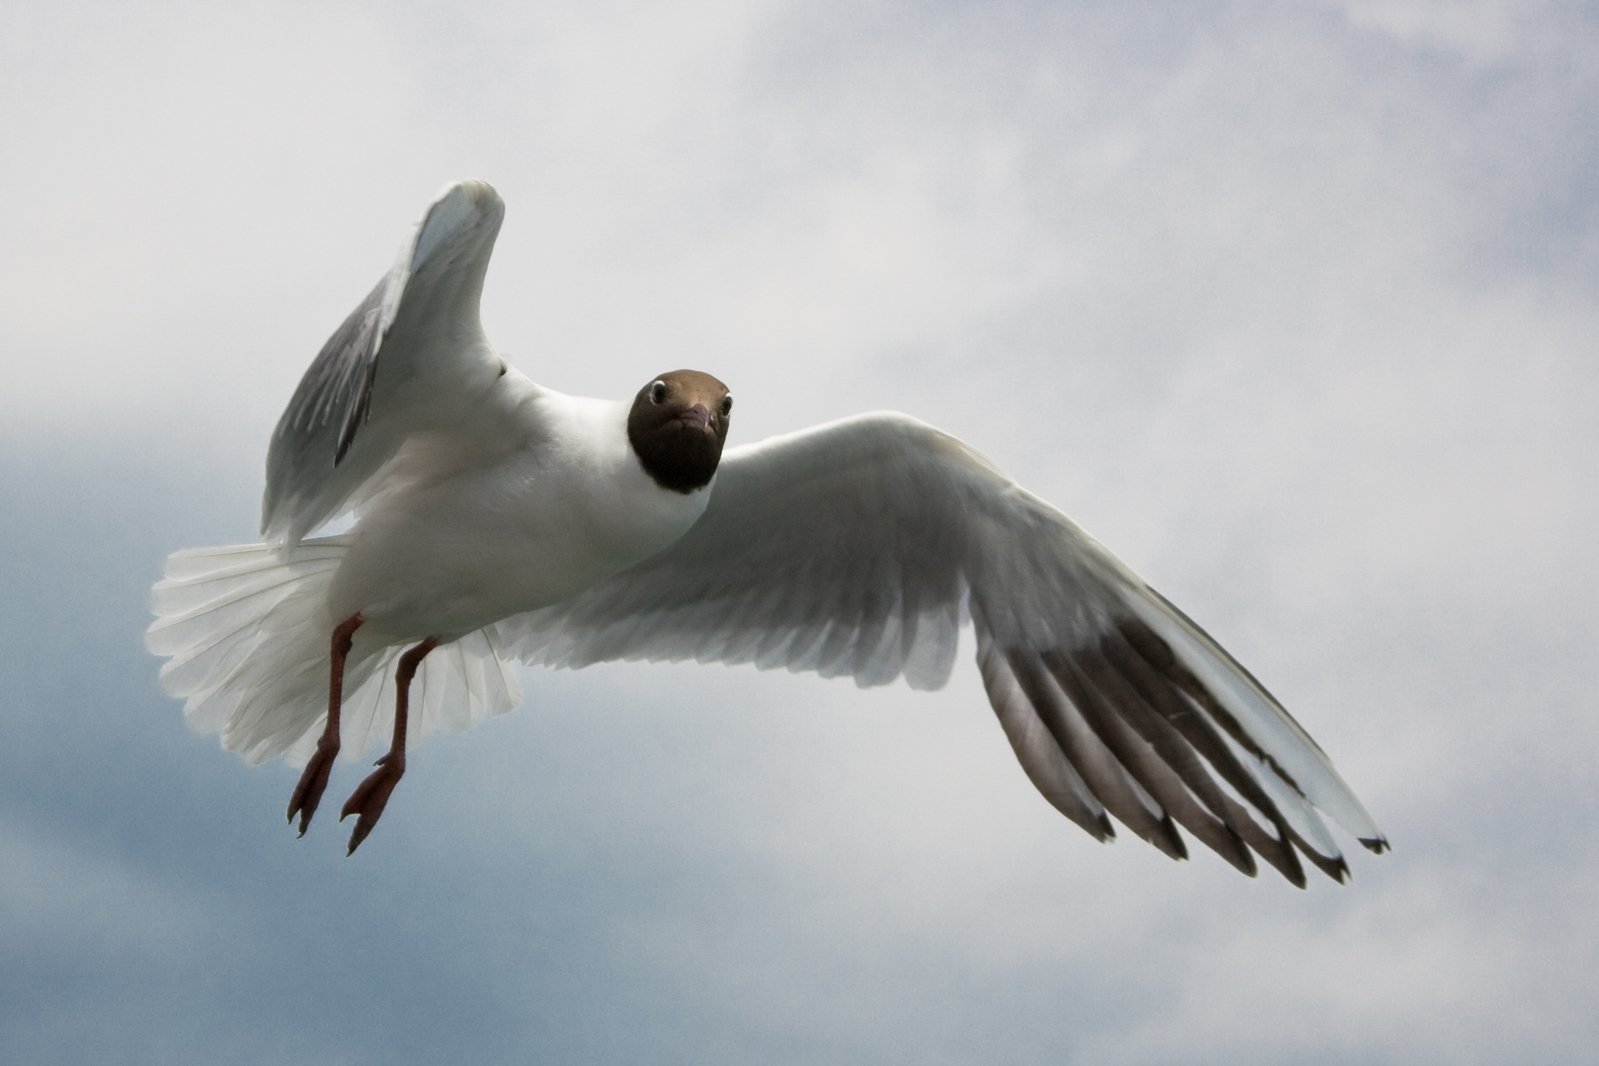 a white bird with orange beak flying through the sky